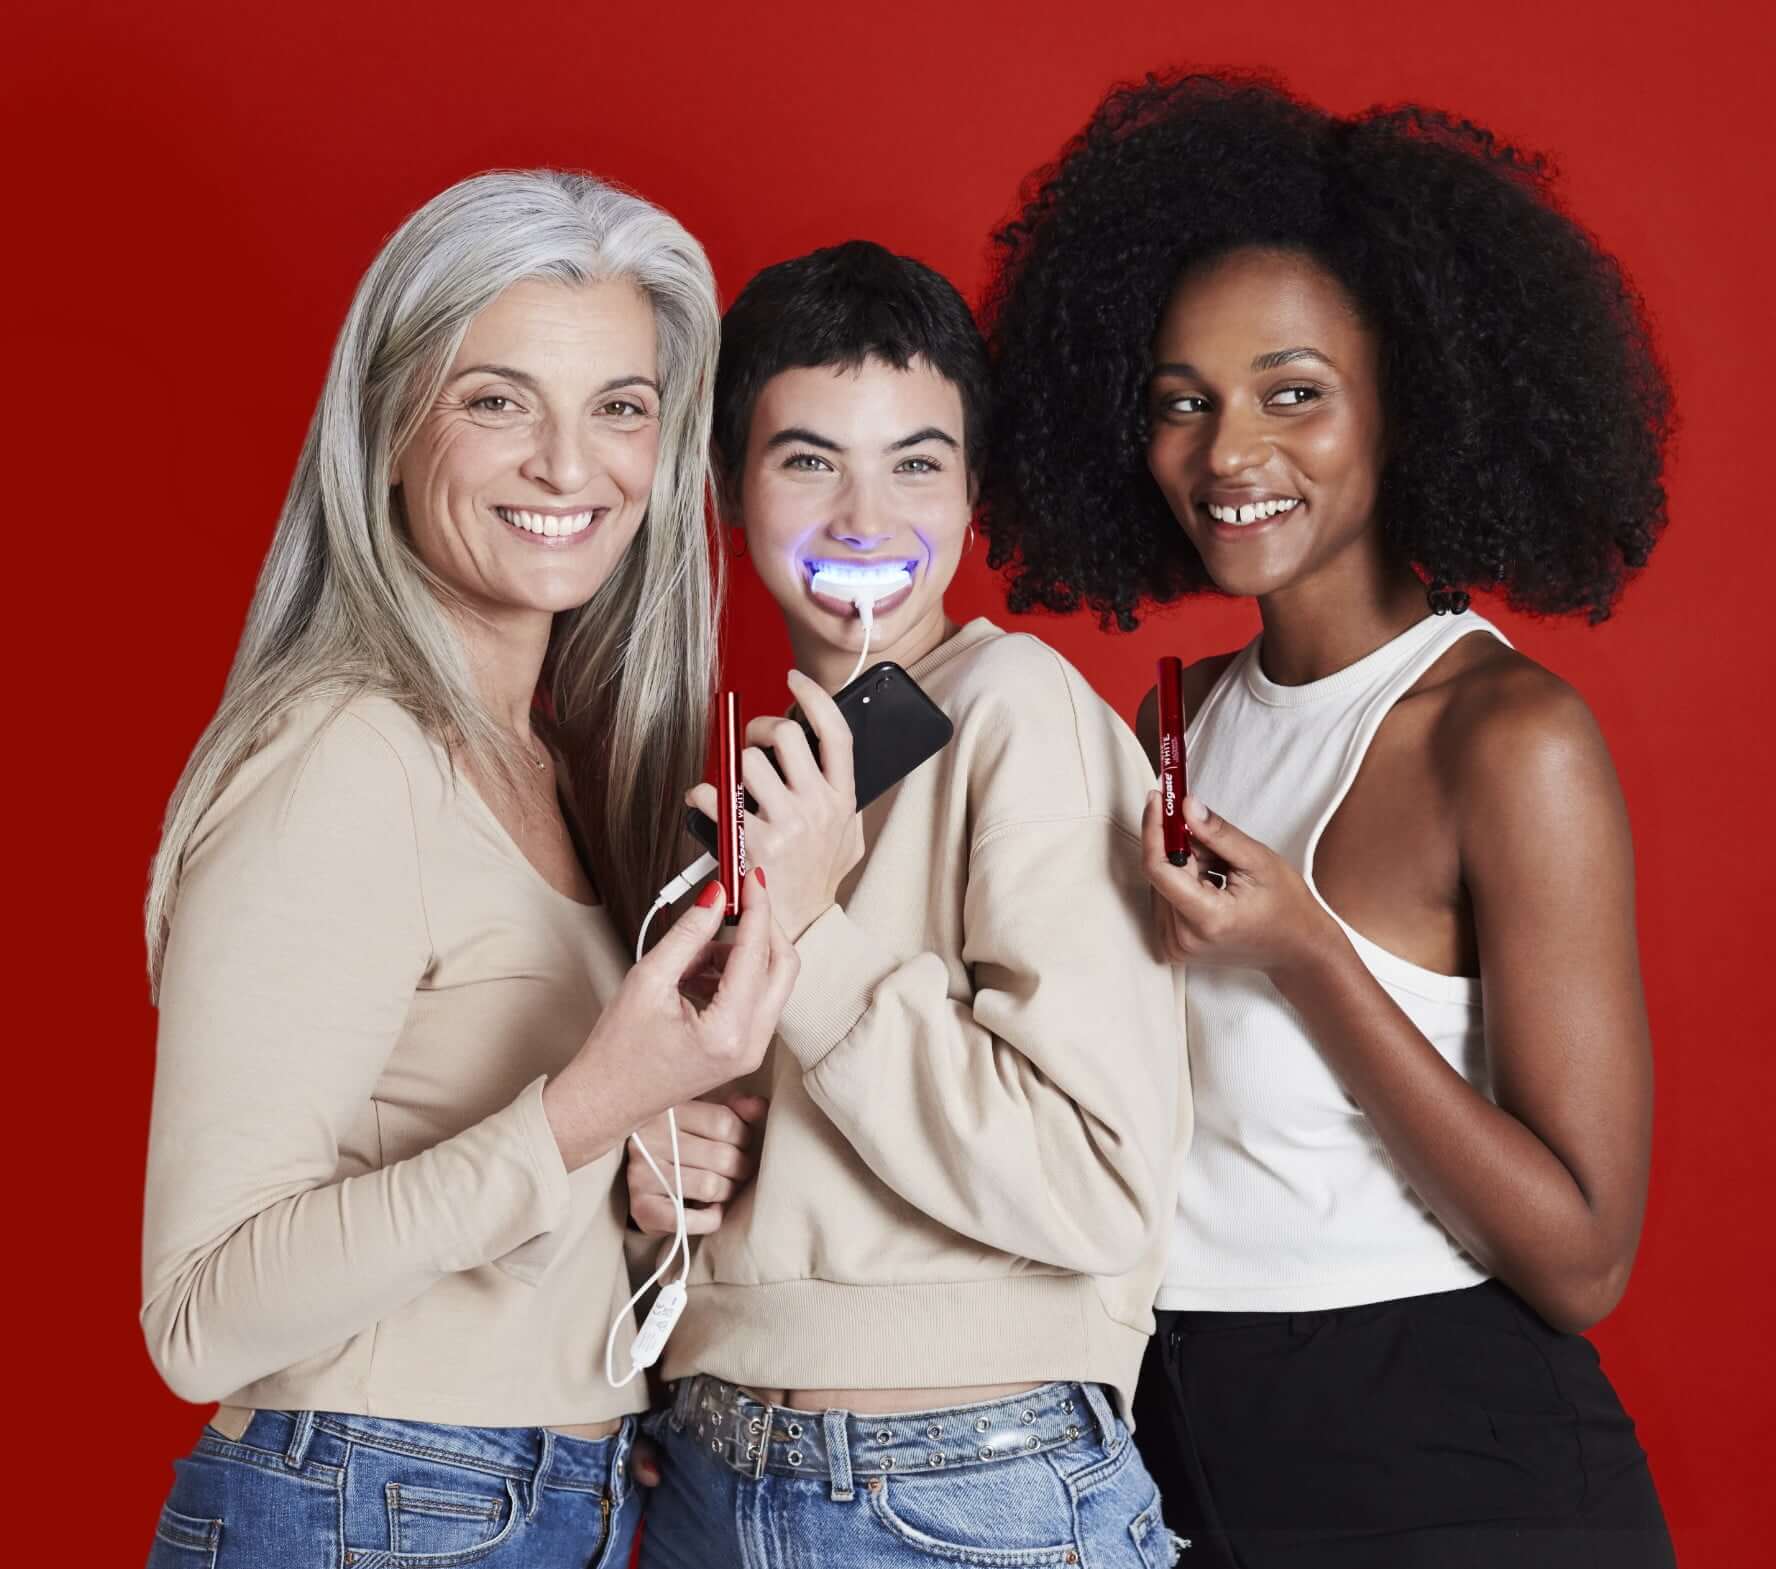 Drei Frauen vor einem roten Hintergrund halten den Colgate Whitening Stift und das Whitening Kit in der Hand